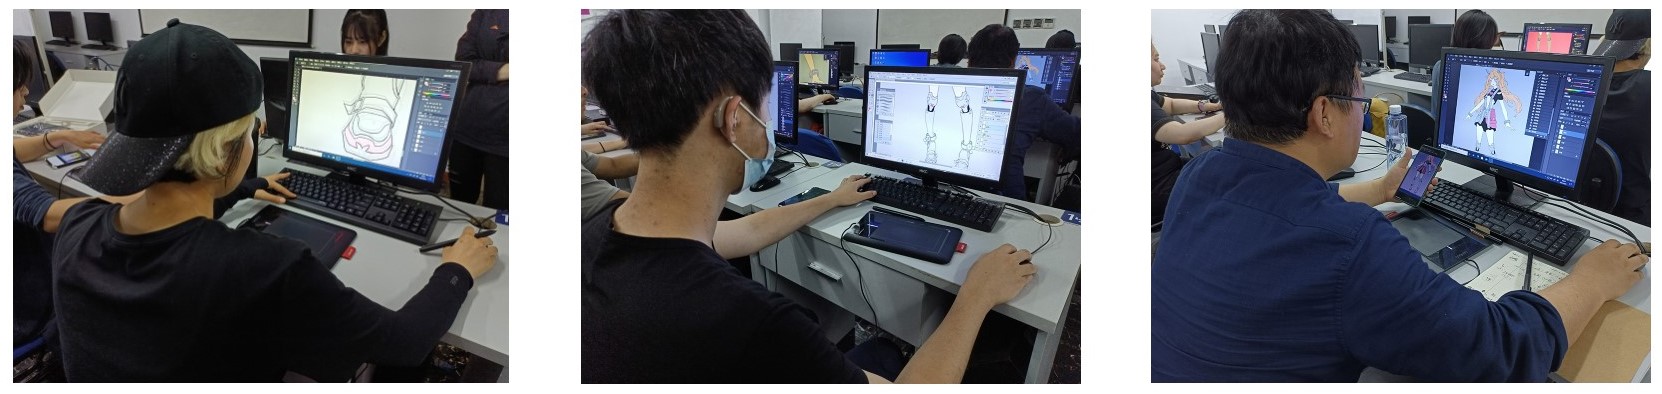 上海五加一培训 SAI二次元数位板漫画手绘课程 补贴1000元